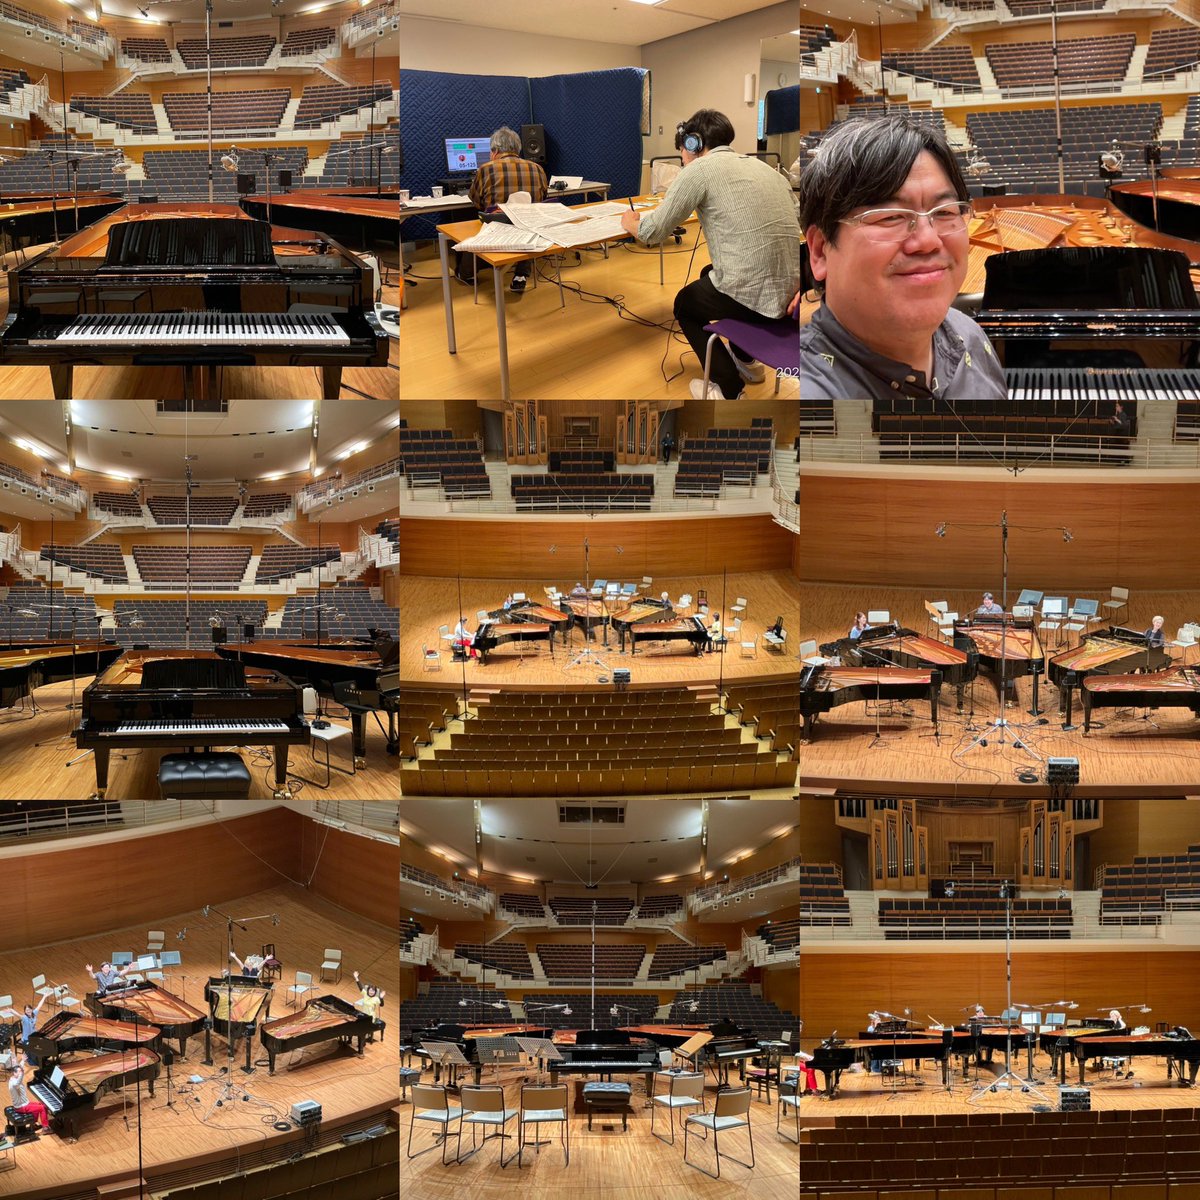 りゅーとぴあでの5台ピアノ録音のときの写真の数々。
ホールが素晴らしくて真ん中のベーゼンドルファーからホールを見た風景は絶景です。